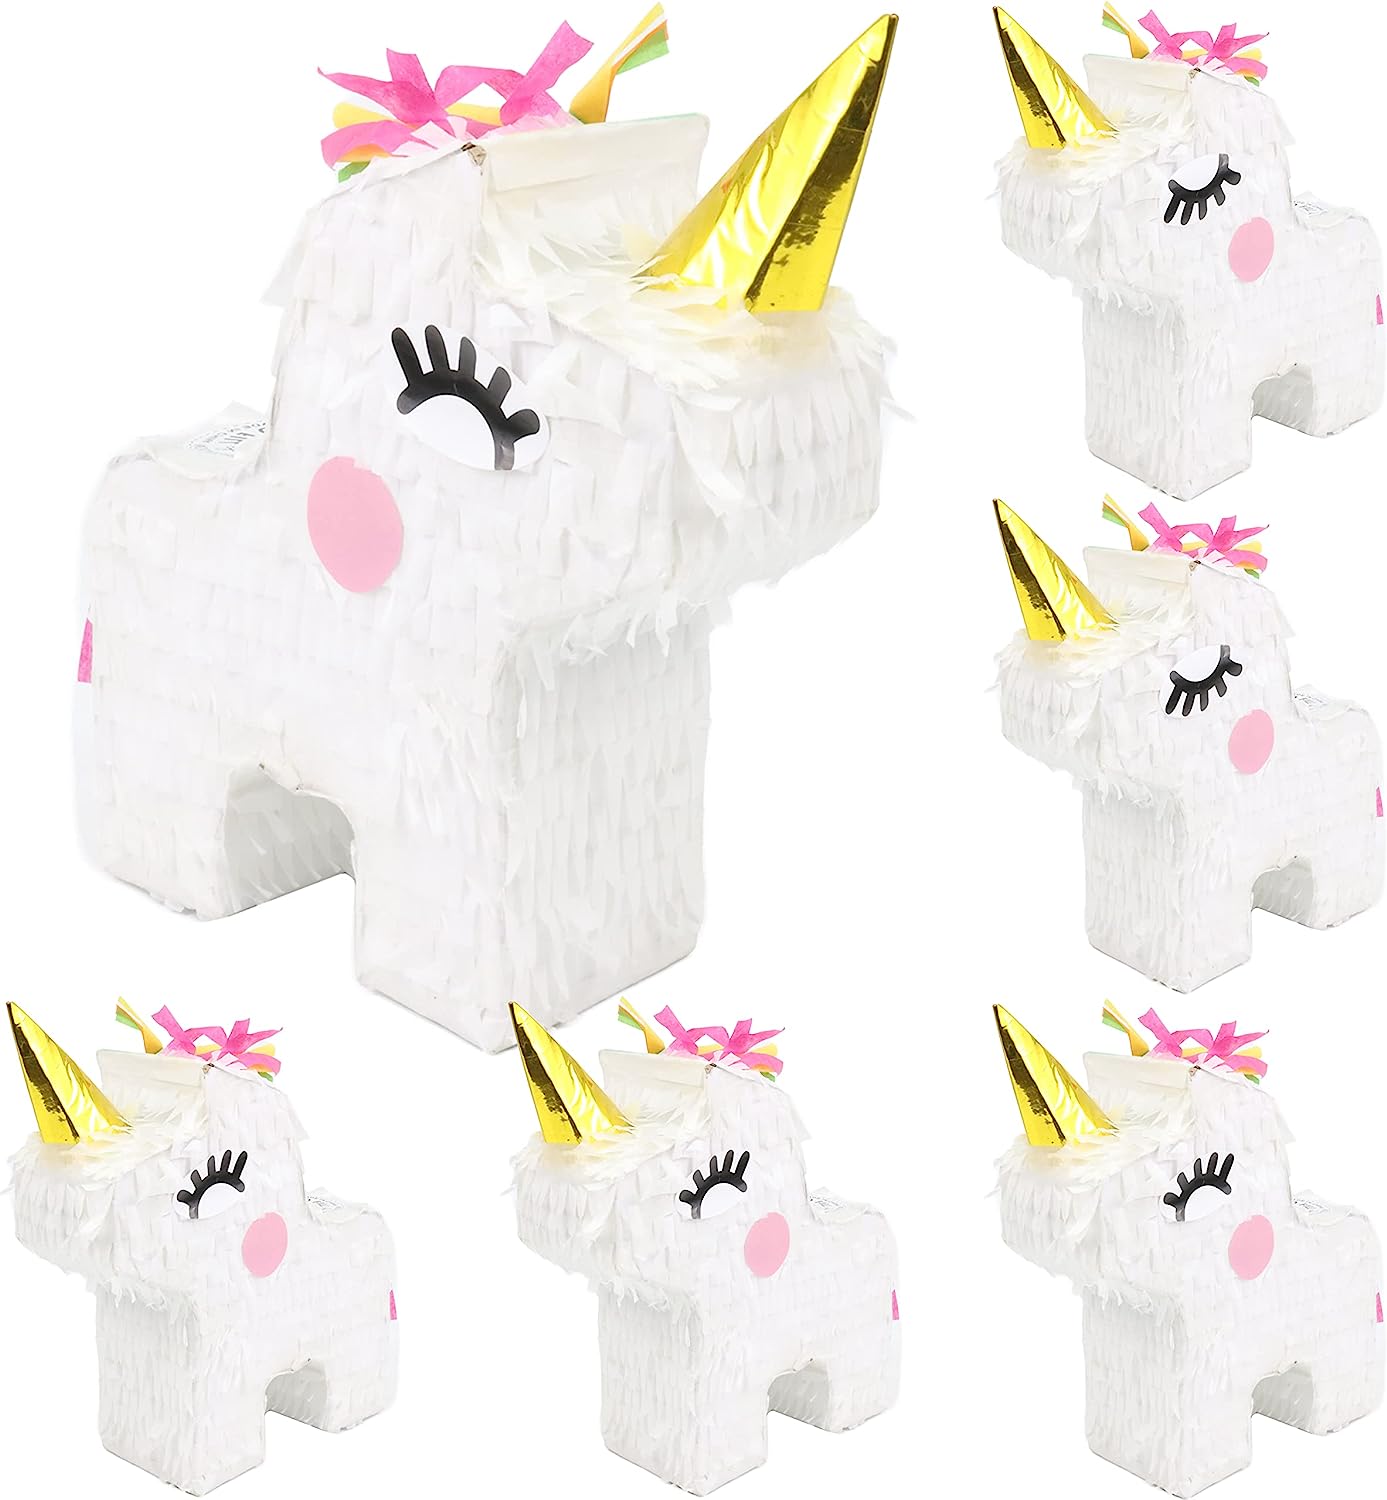 GIFTEXPRESS Mini piñatas de unicornio (8"x6") 